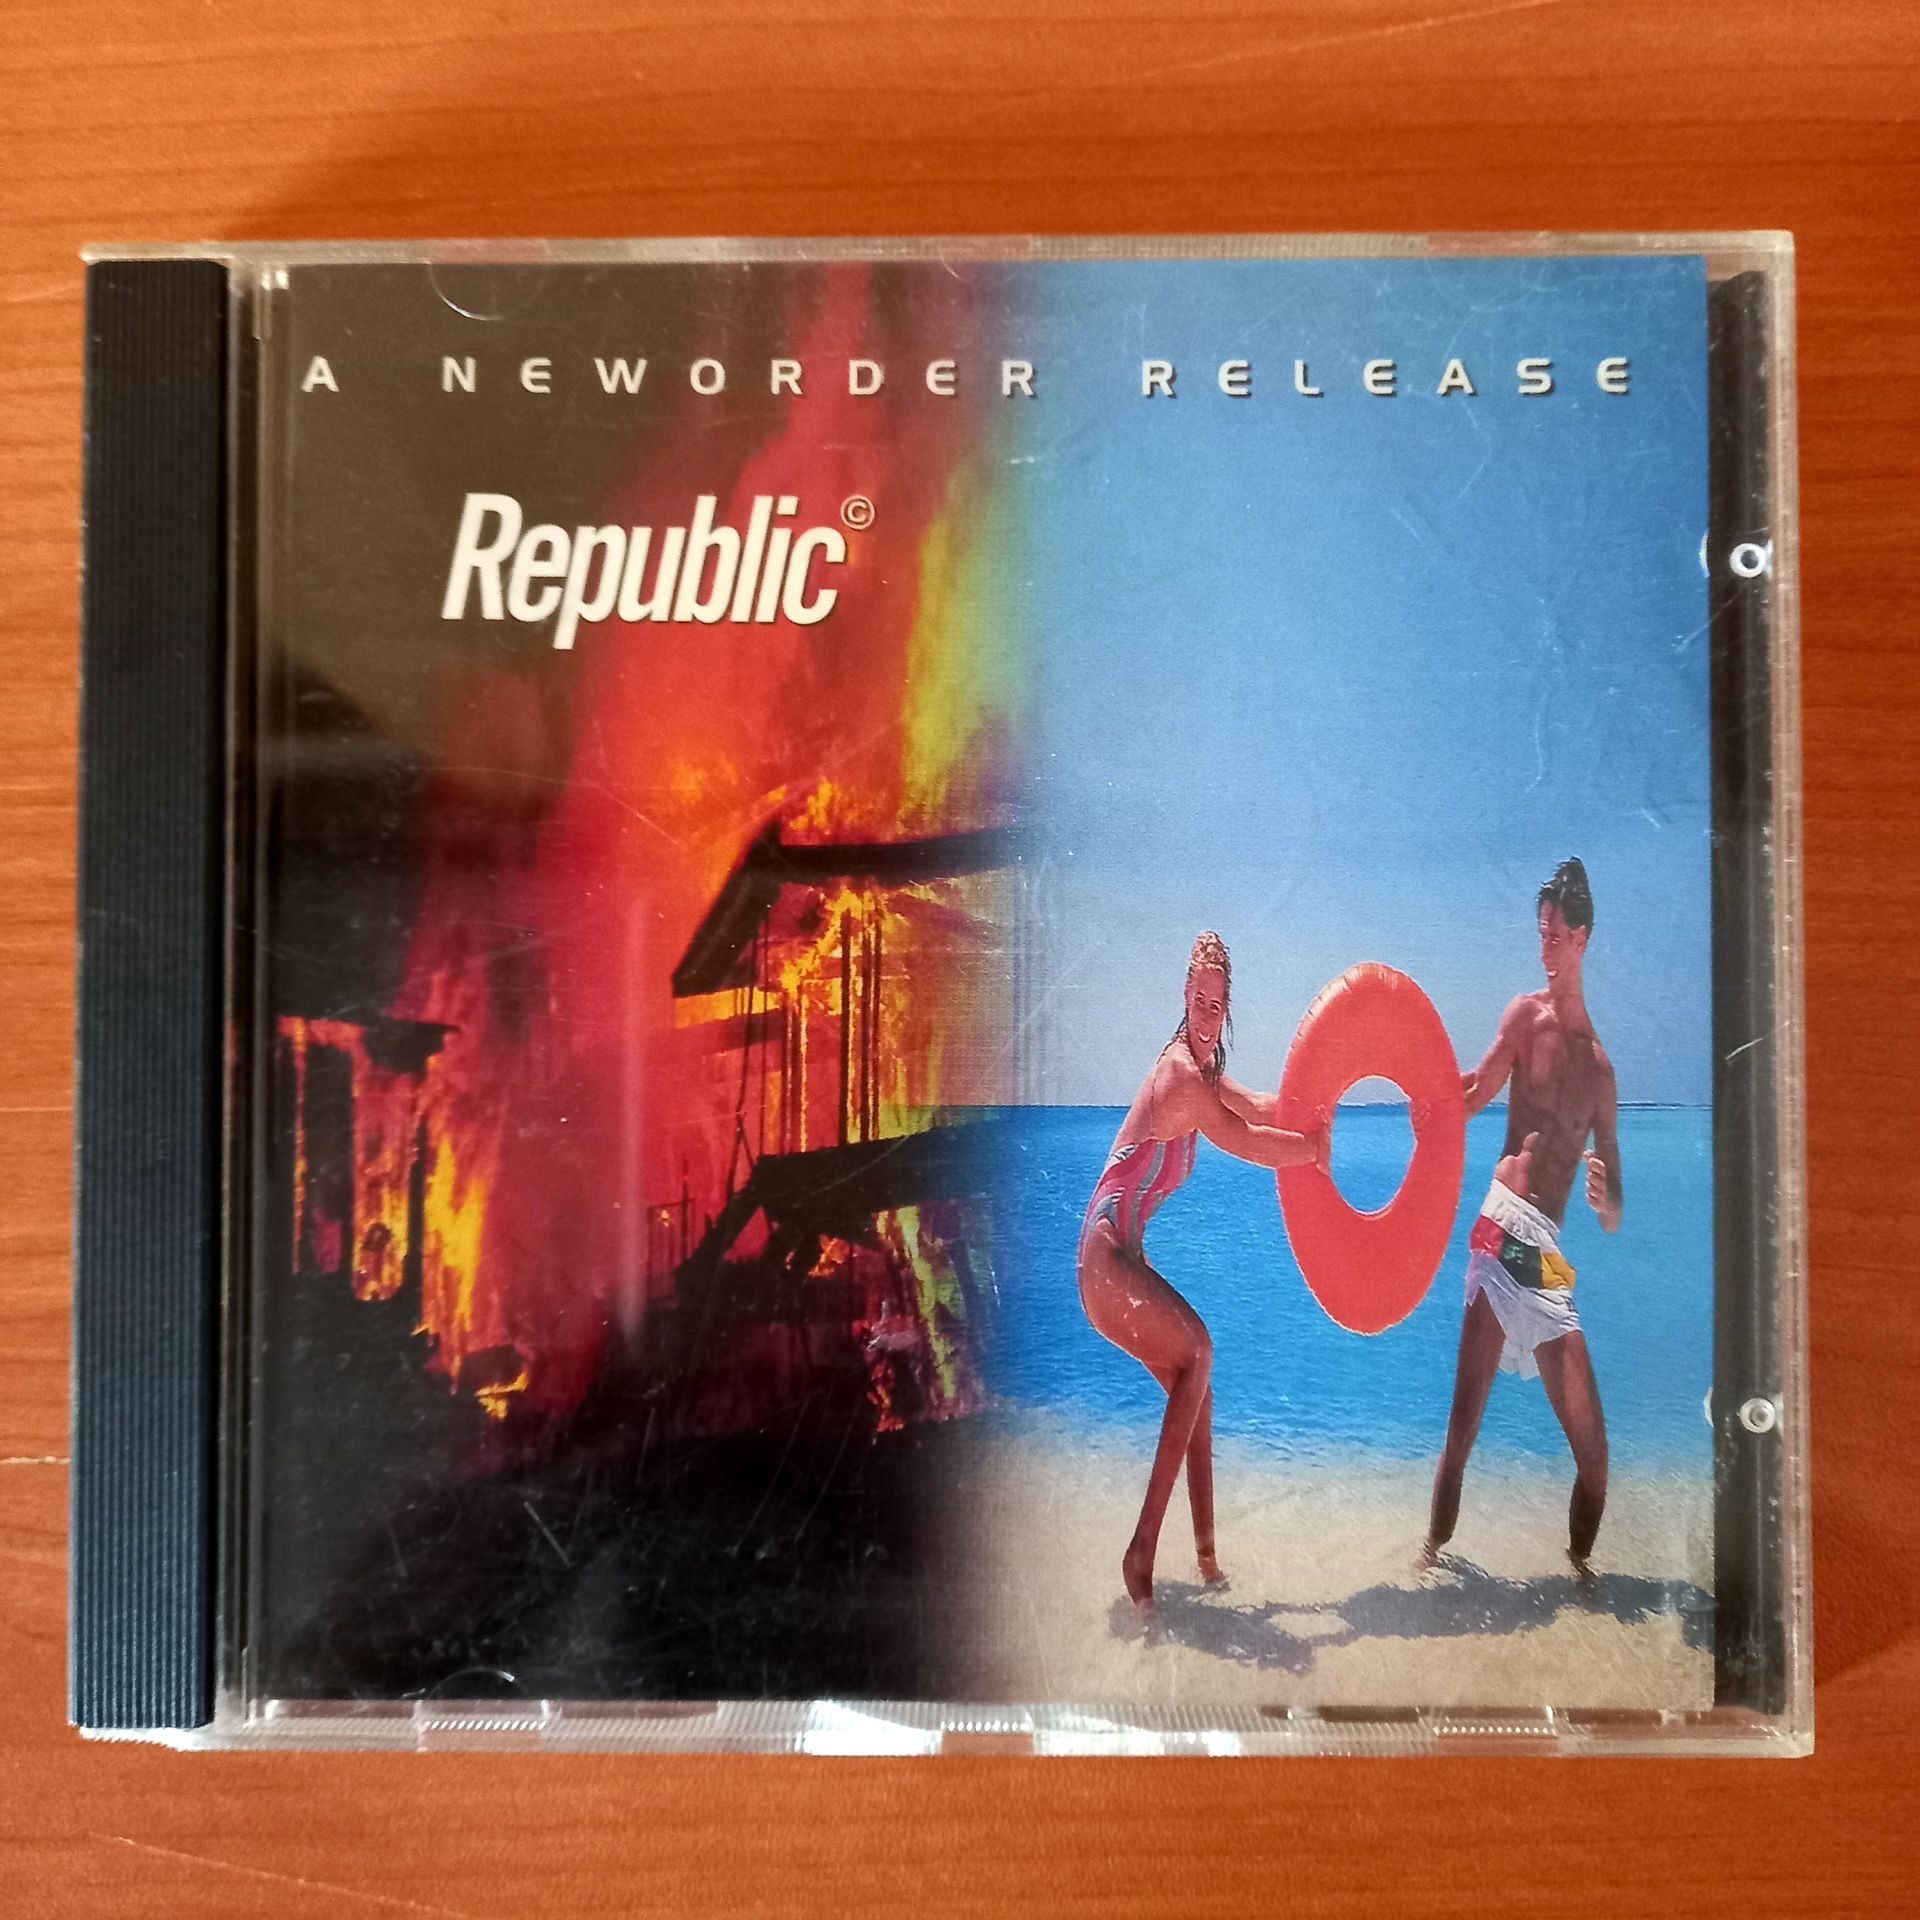 NEW ORDER – REPUBLIC (1993) - CD 2.EL